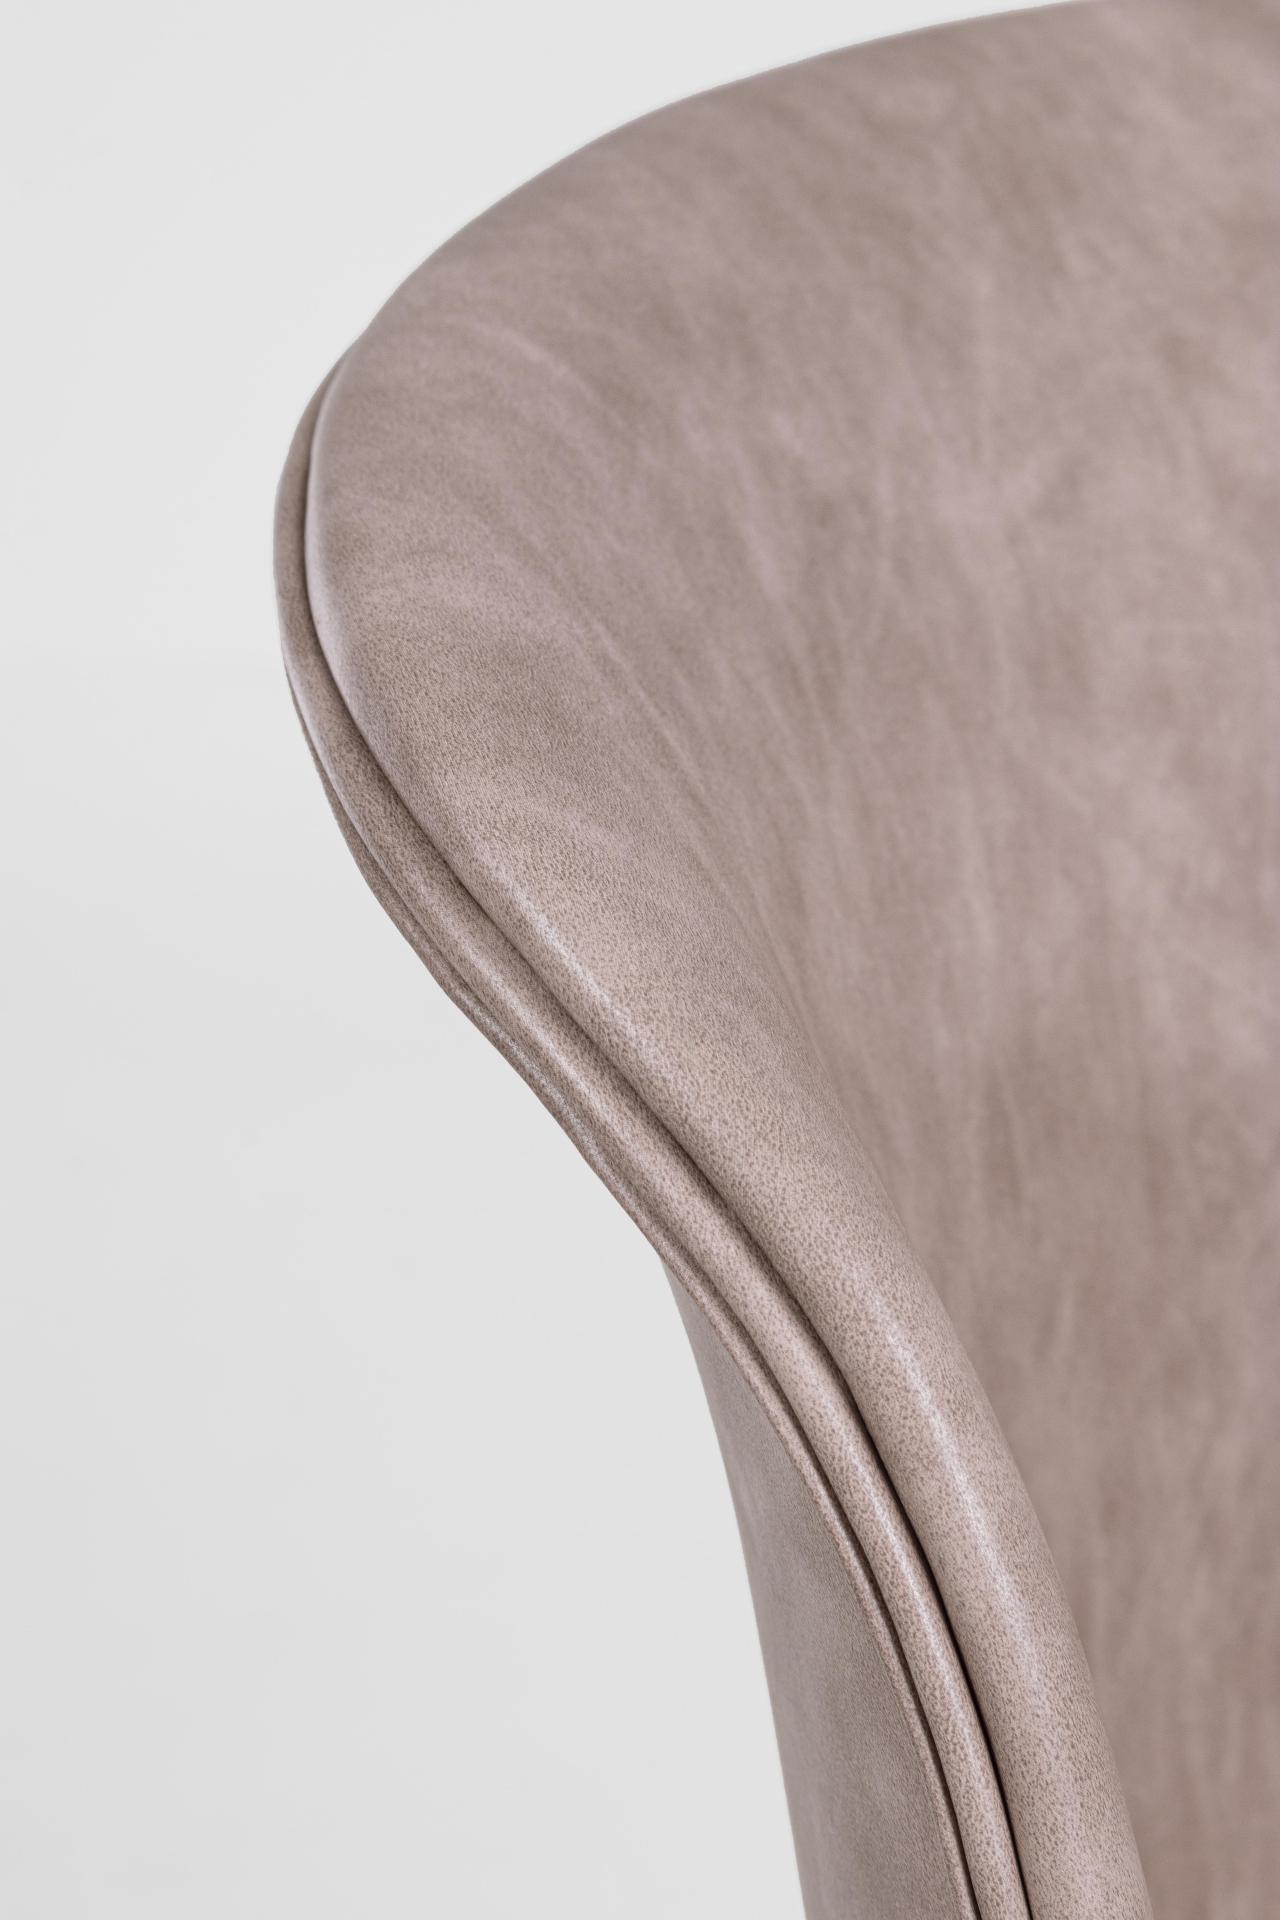 Der Esszimmerstuhl Loft überzeugt mit seinem modernem Design. Gefertigt wurde der Stuhl aus Kunstleder, welches einen Beige Farbton besitzt. Das Gestell ist aus Metall und ist Schwarz. Die Sitzhöhe beträgt 45 cm.